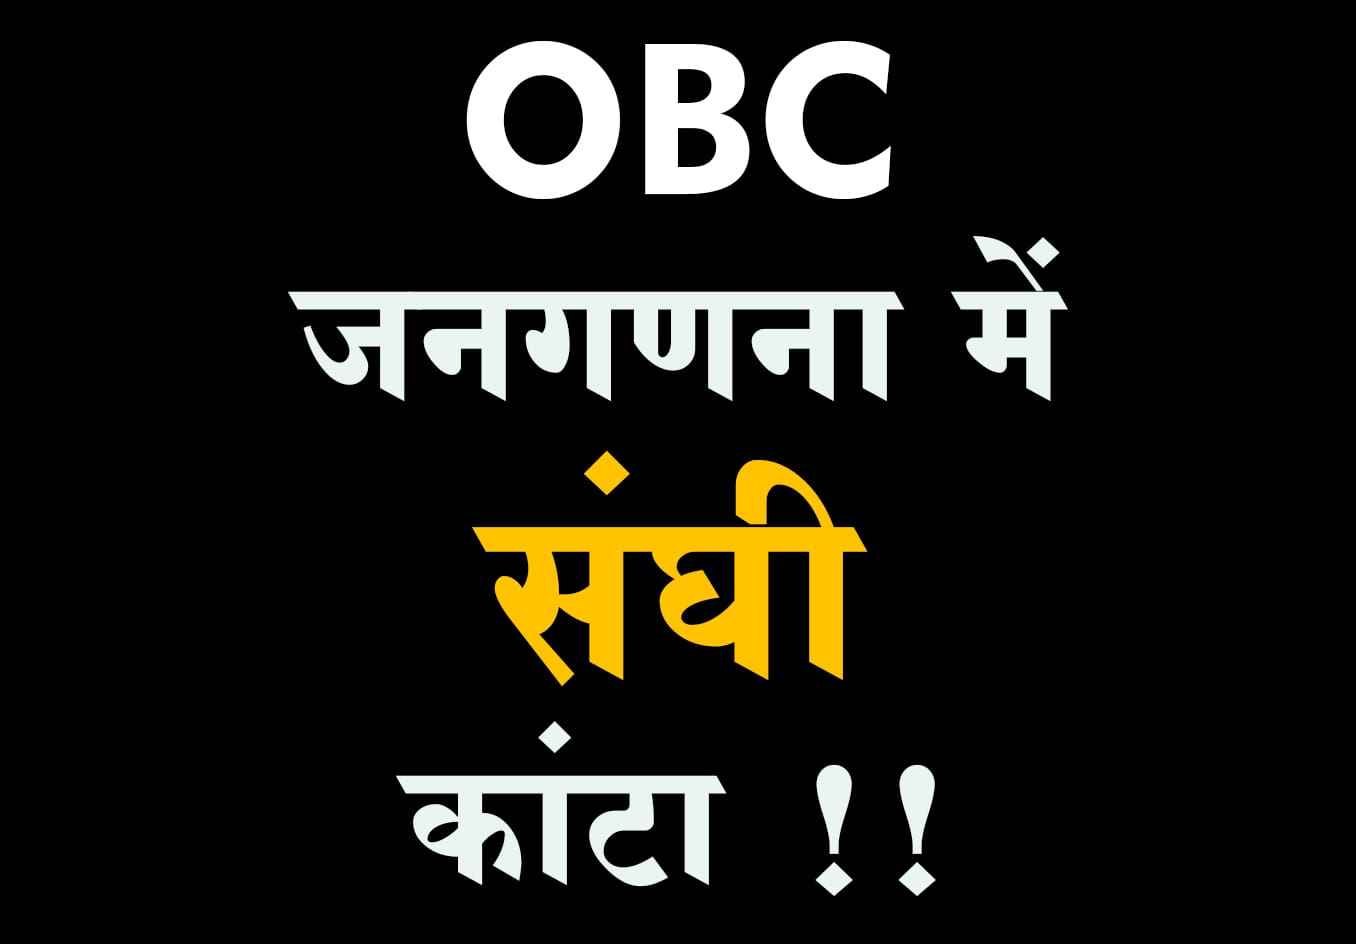 OBC jatigat janganana opposed by rashtriya Swayamsevak Sangh